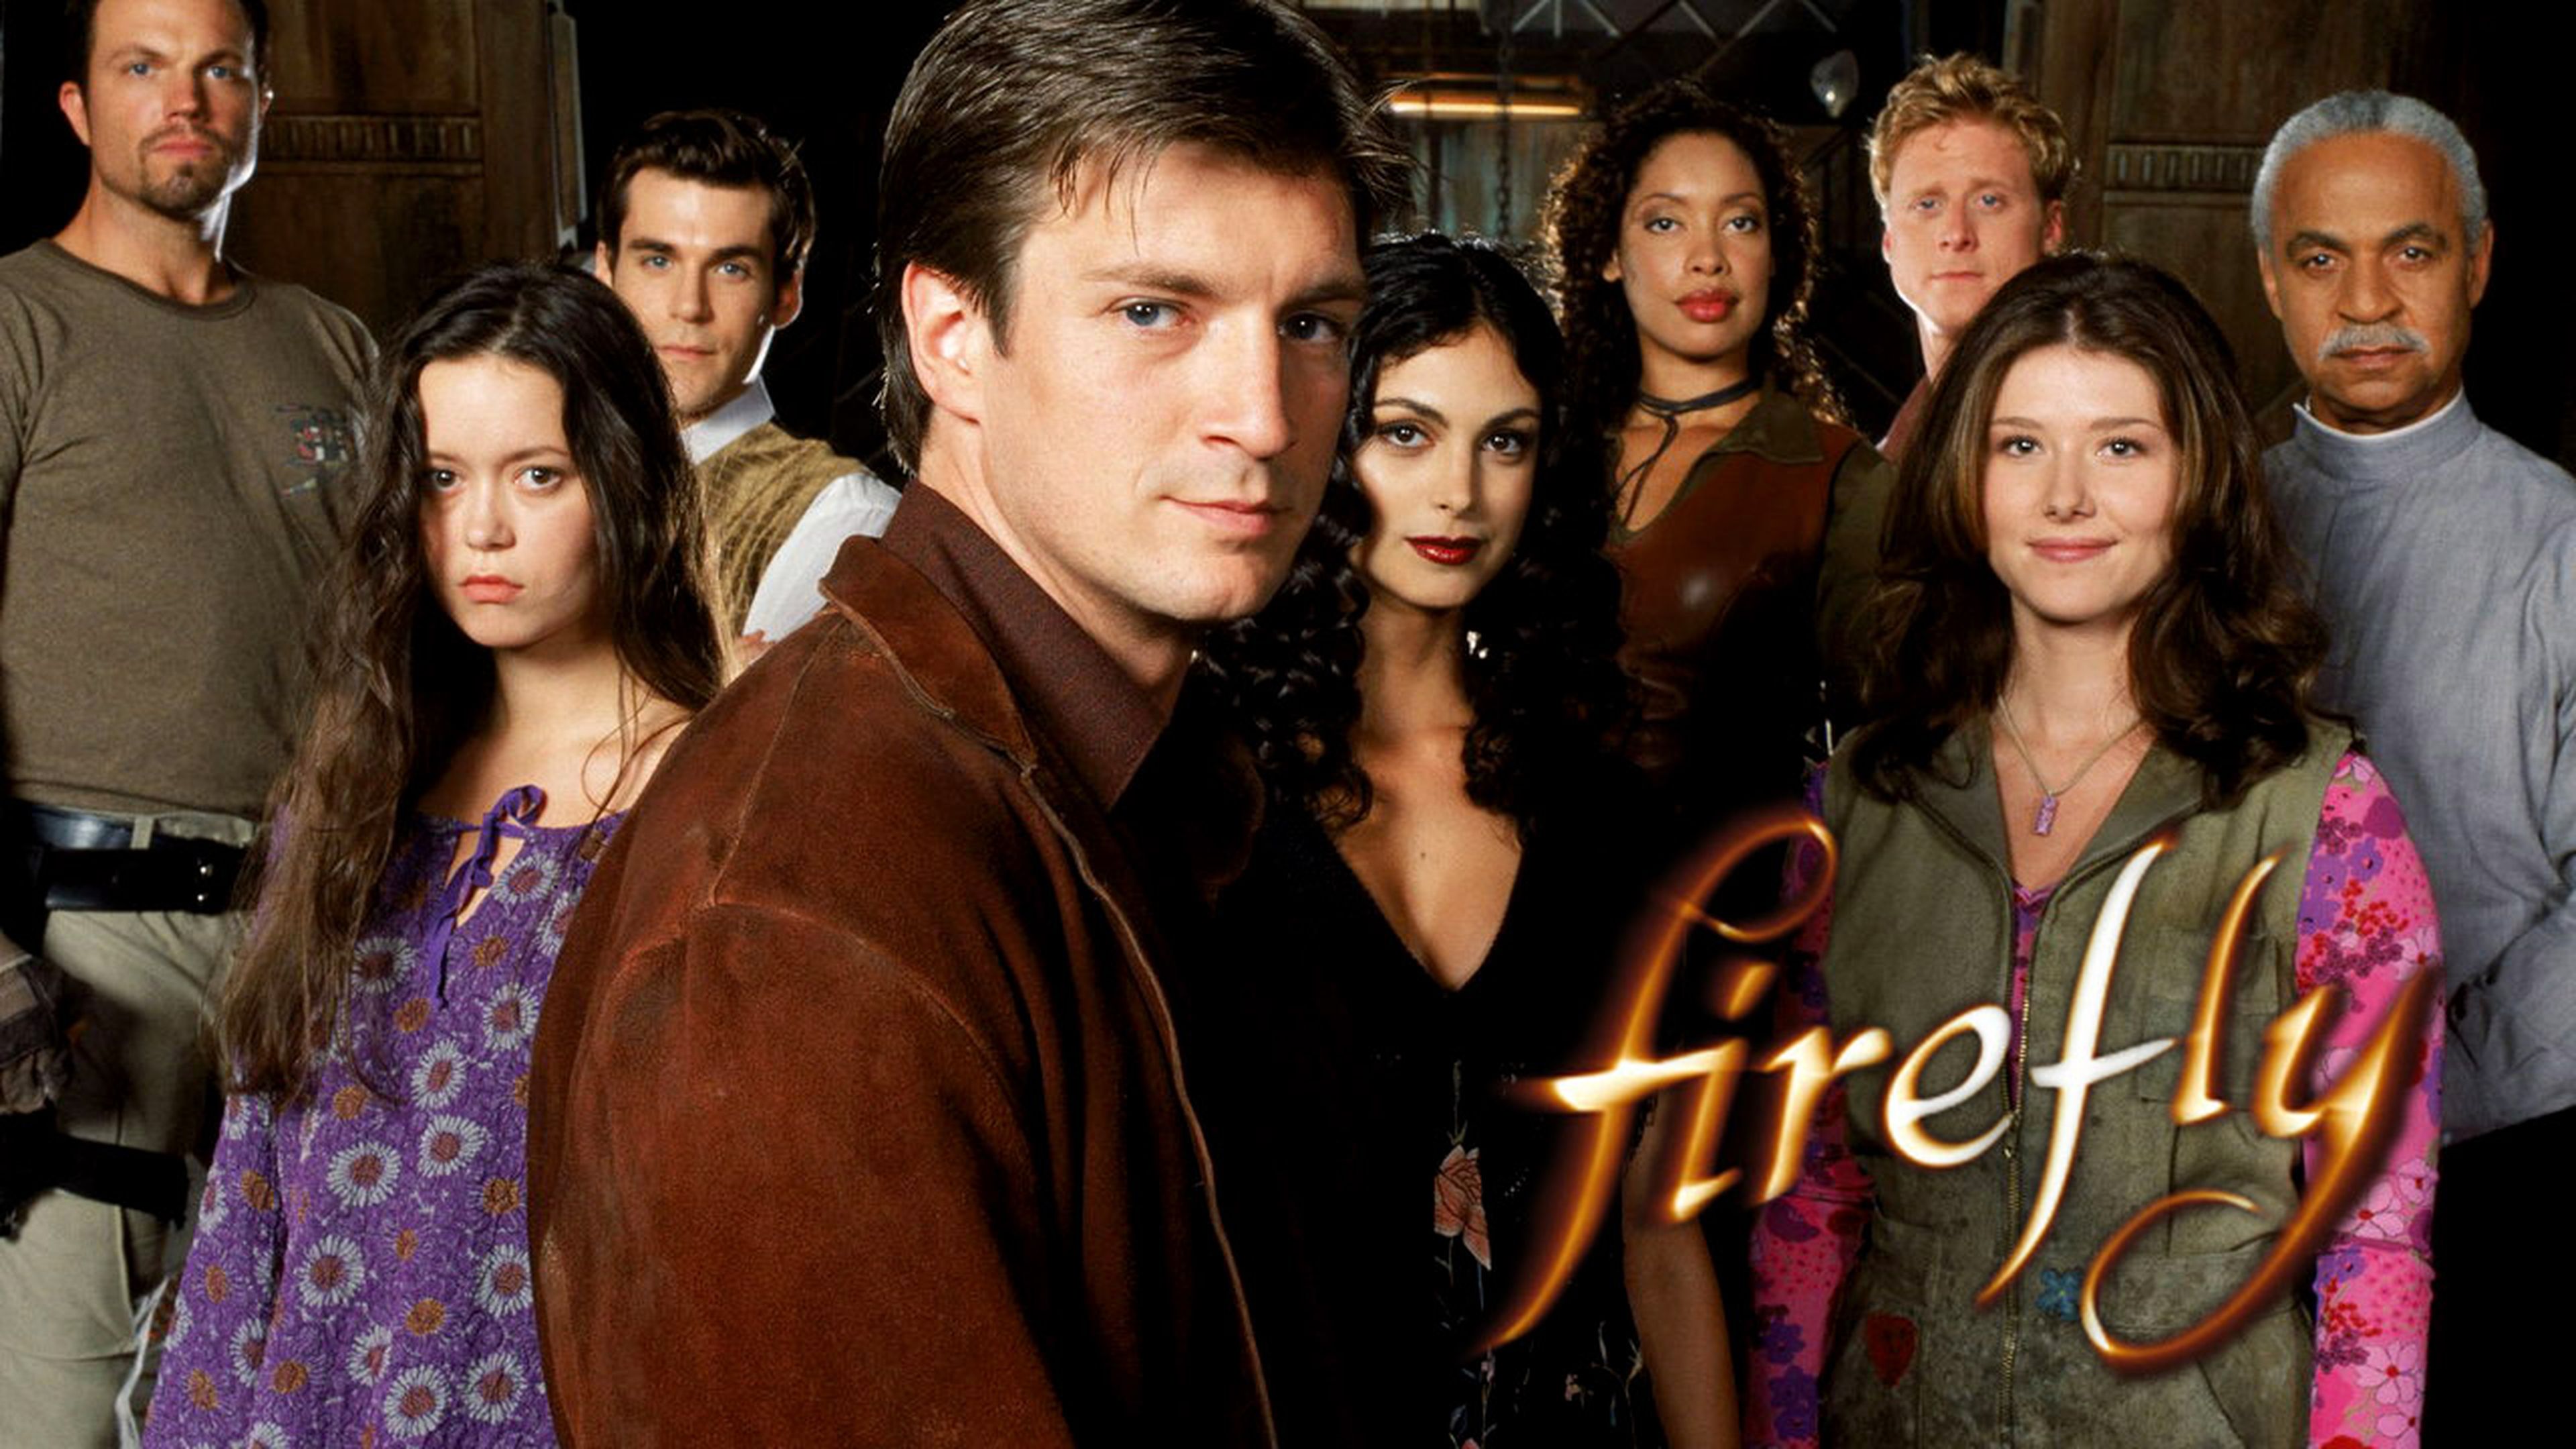 Netflix ofrecerá Firefly, la serie creada por Joss Whedon en 2002, inédita en España